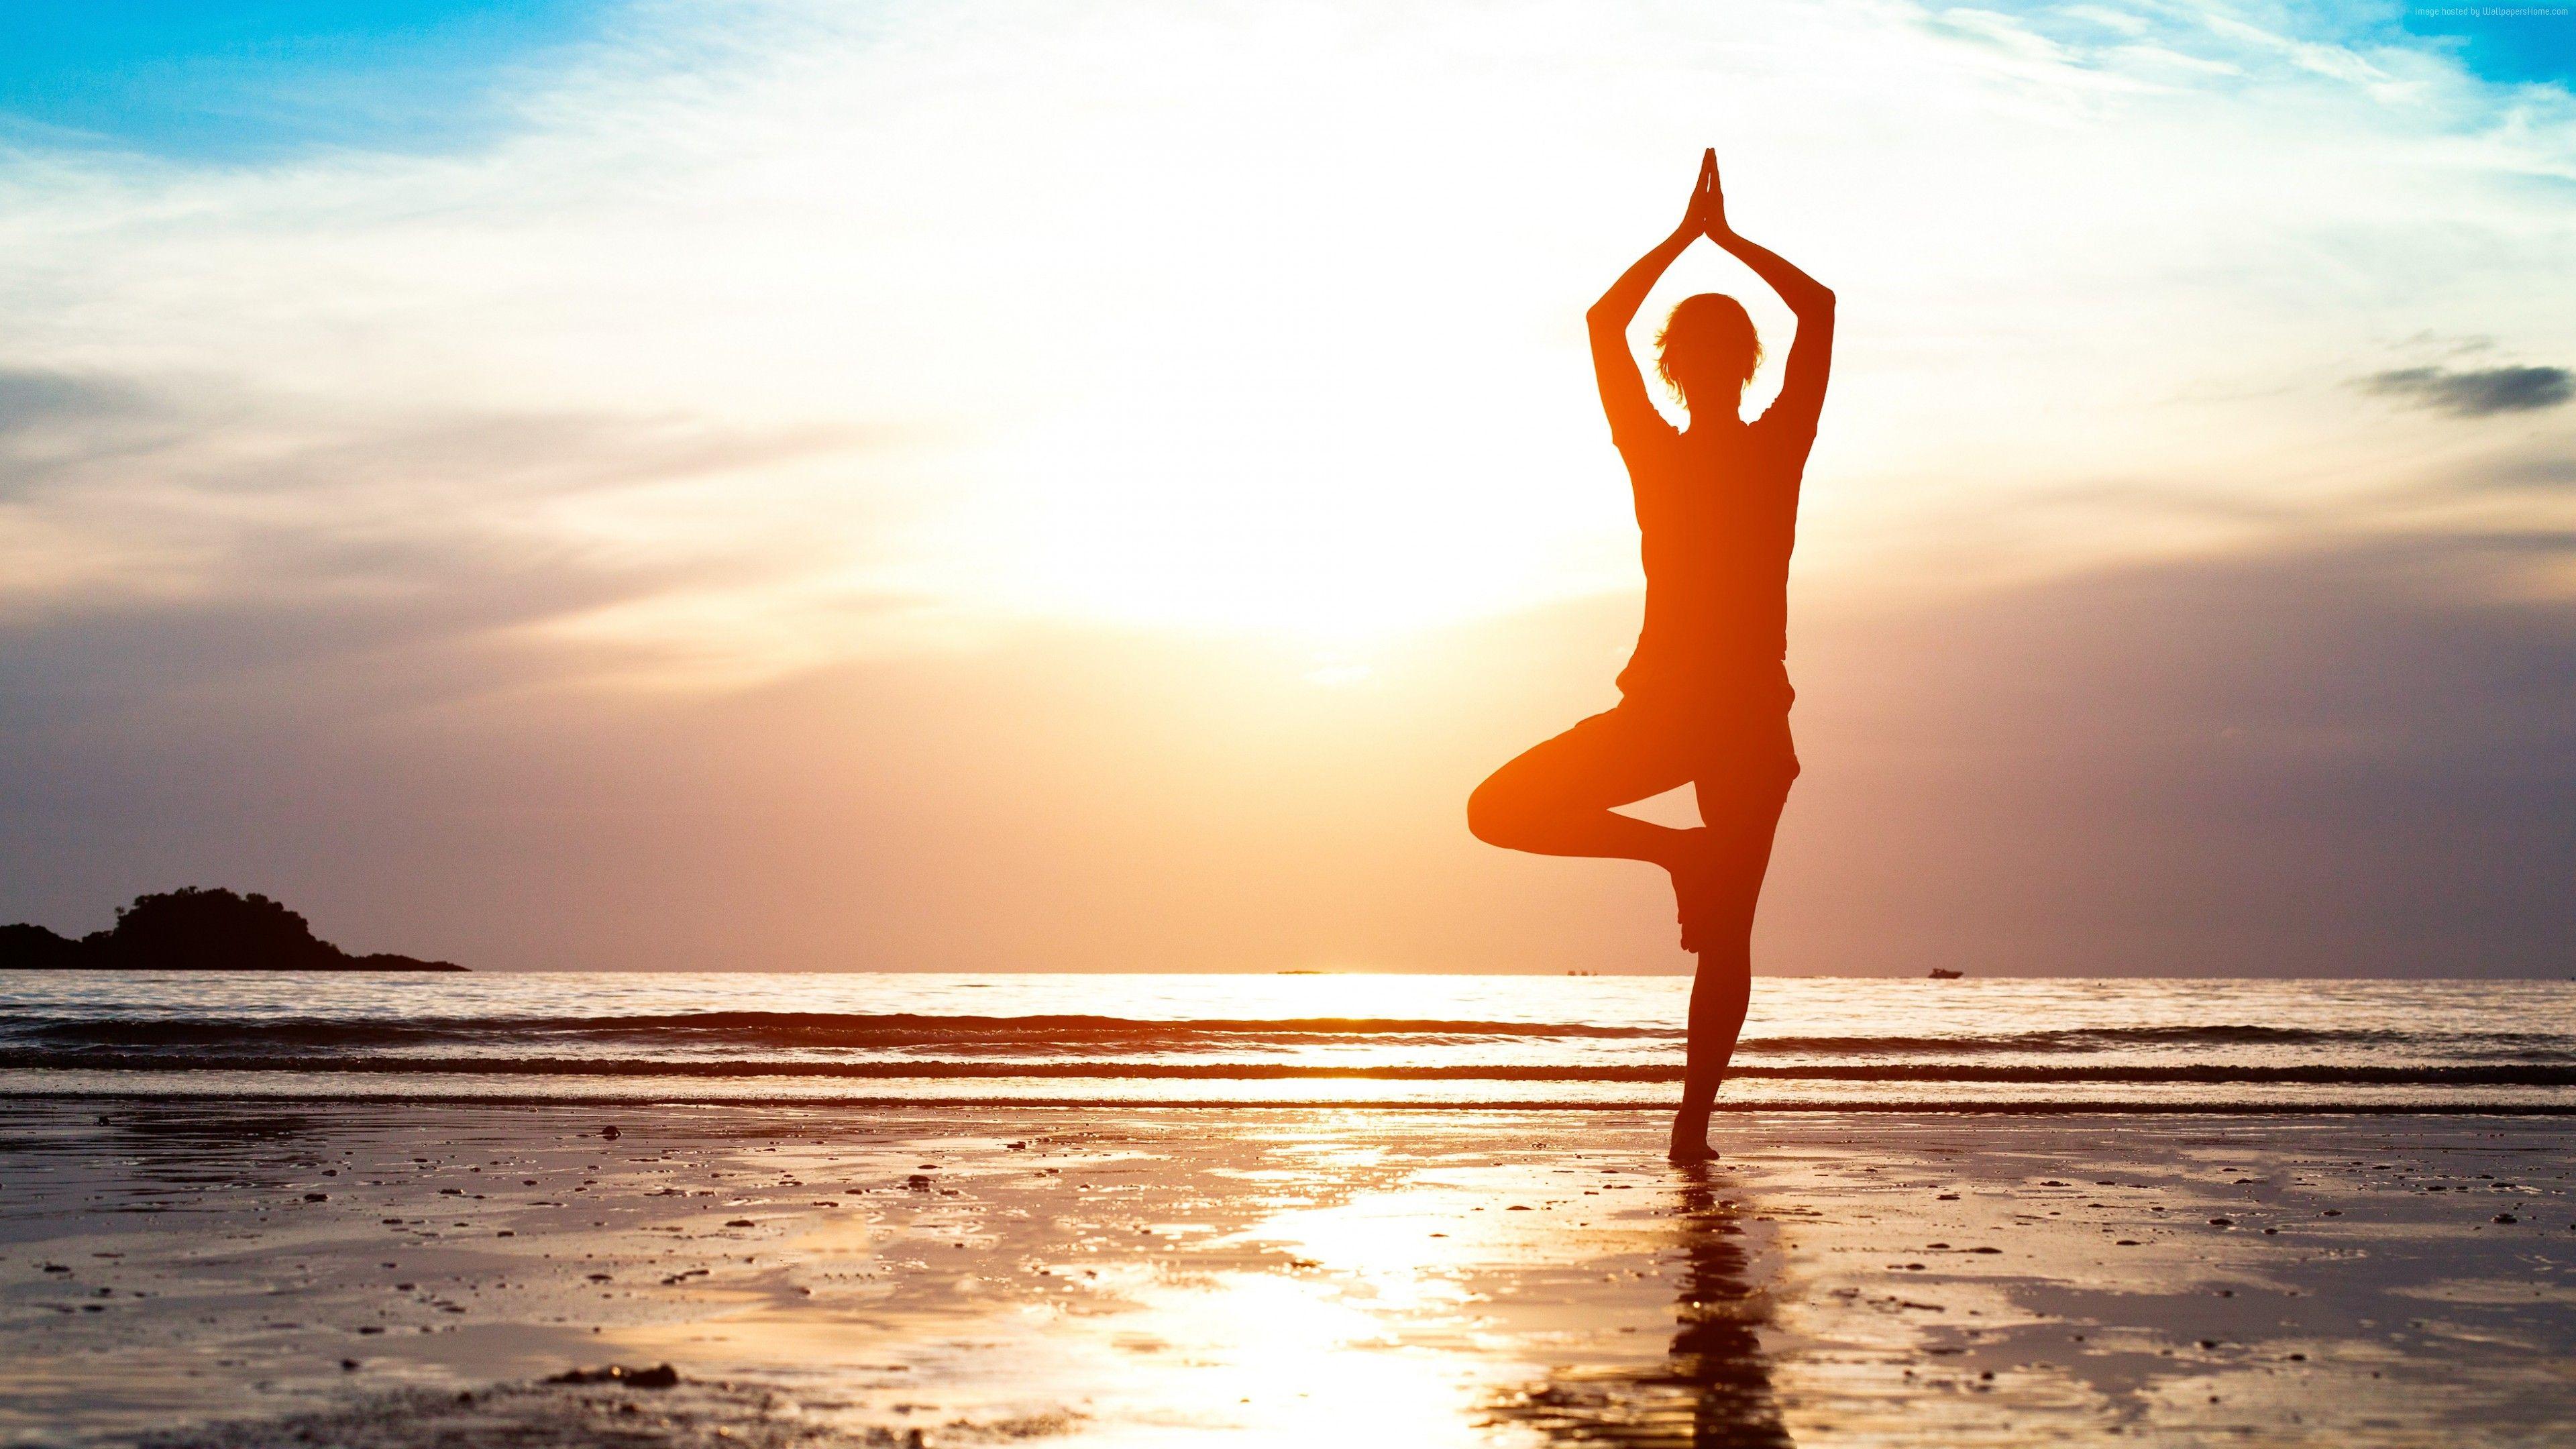 3840x2160 Cô gái Yoga giảm cân Bãi biển Sand Sun Relax Fitness Wallpaper and Free Stock Photo